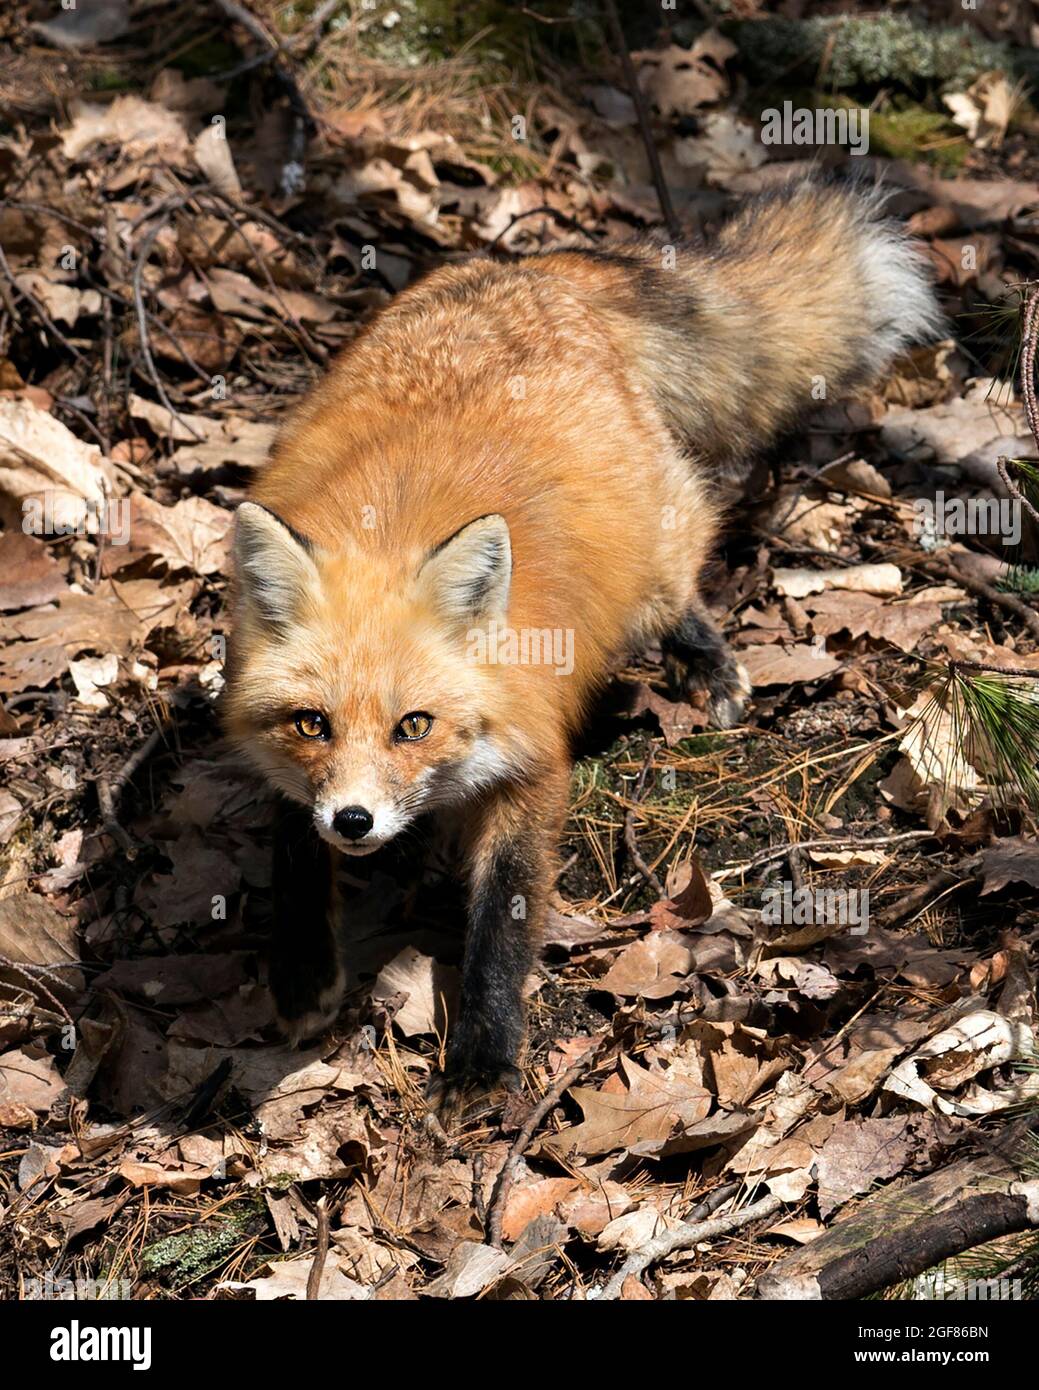 Primo piano Red Fox guardando la fotocamera nella stagione primaverile con sfondo di foresta sfocata nel suo ambiente e habitat. Immagine Fox. Immagine. Verticale. Foto Stock